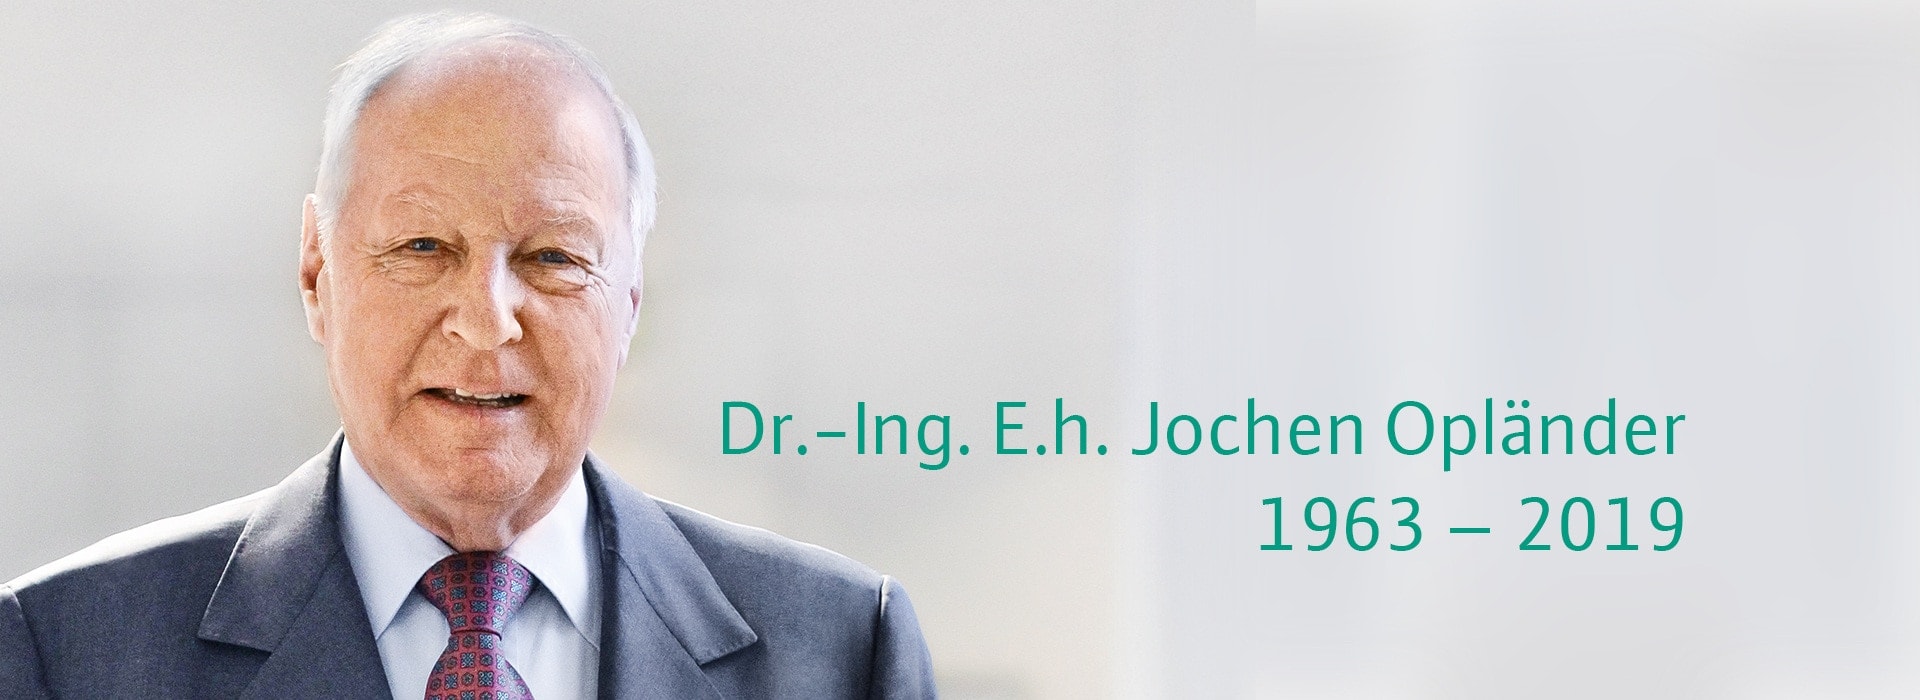 Dr.-Ing. E.h. Jochen Opländer